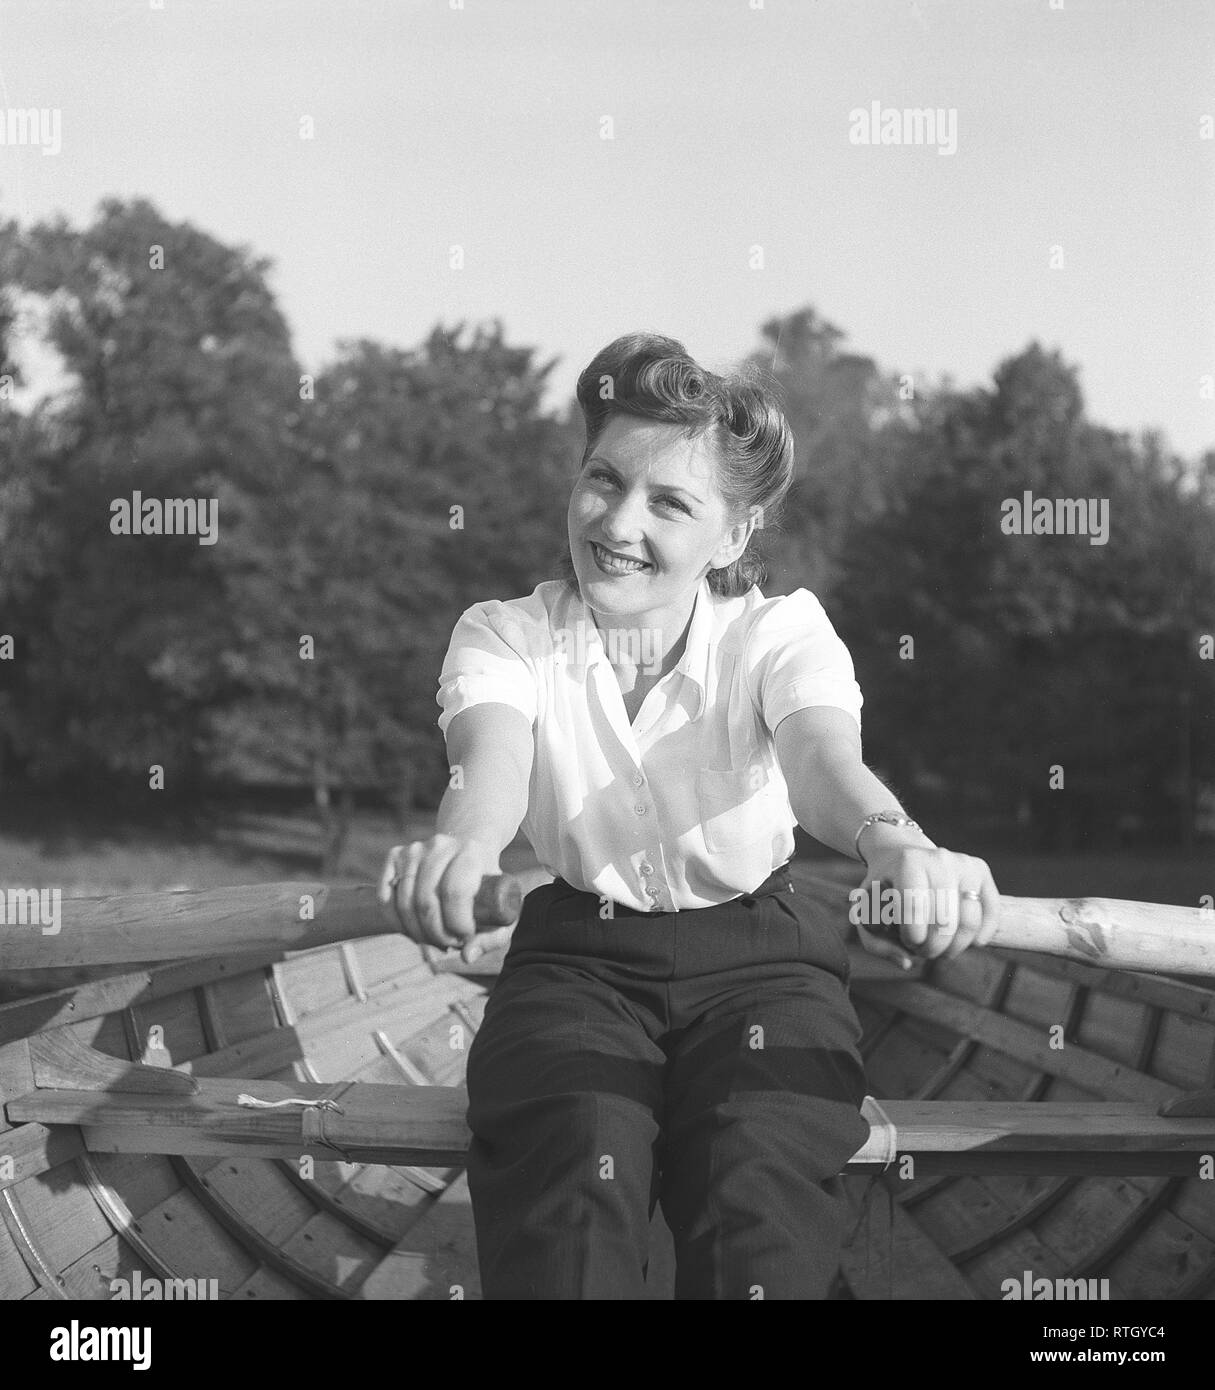 L'été 1940. Une jeune femme est un bateau d'aviron. Elle est l'actrice Barbro Kollberg. Kristoffersson Photo ref E52-3. Suède 1943 Banque D'Images